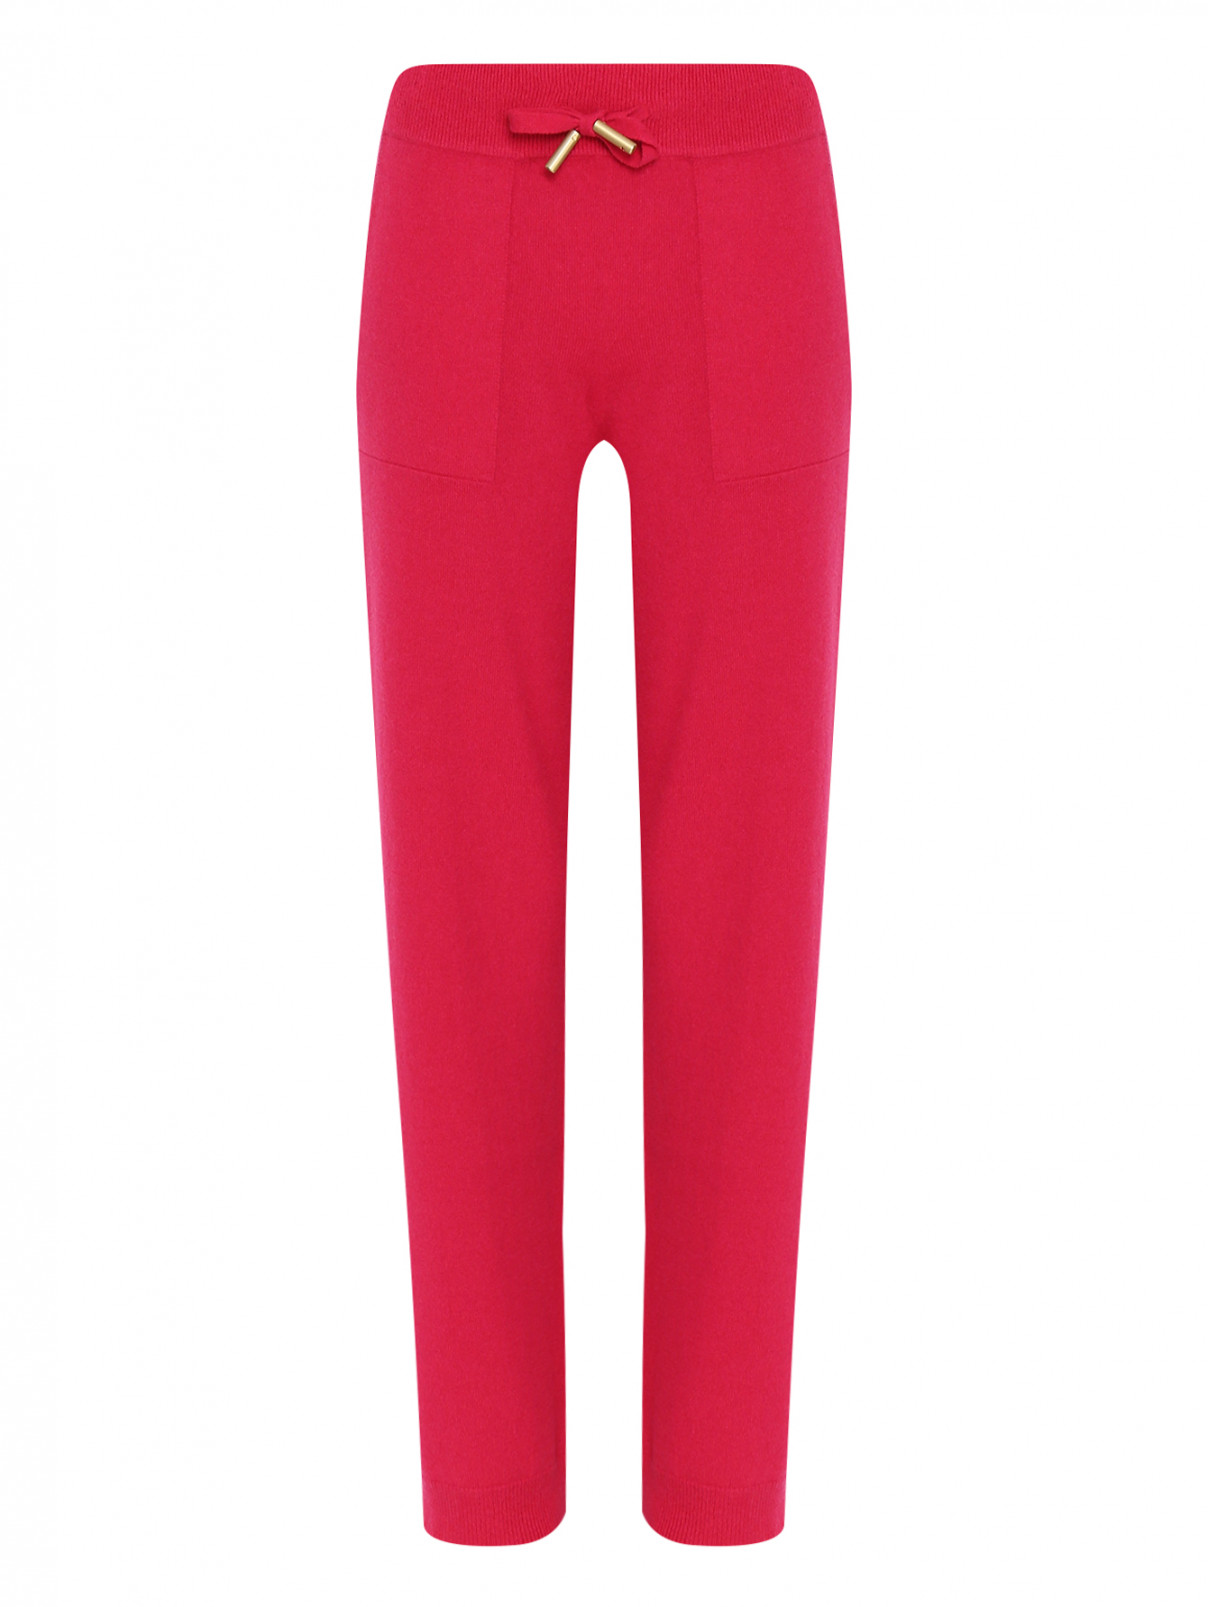 Трикотажные брюки из кашемира на резинке Lorena Antoniazzi  –  Общий вид  – Цвет:  Фиолетовый